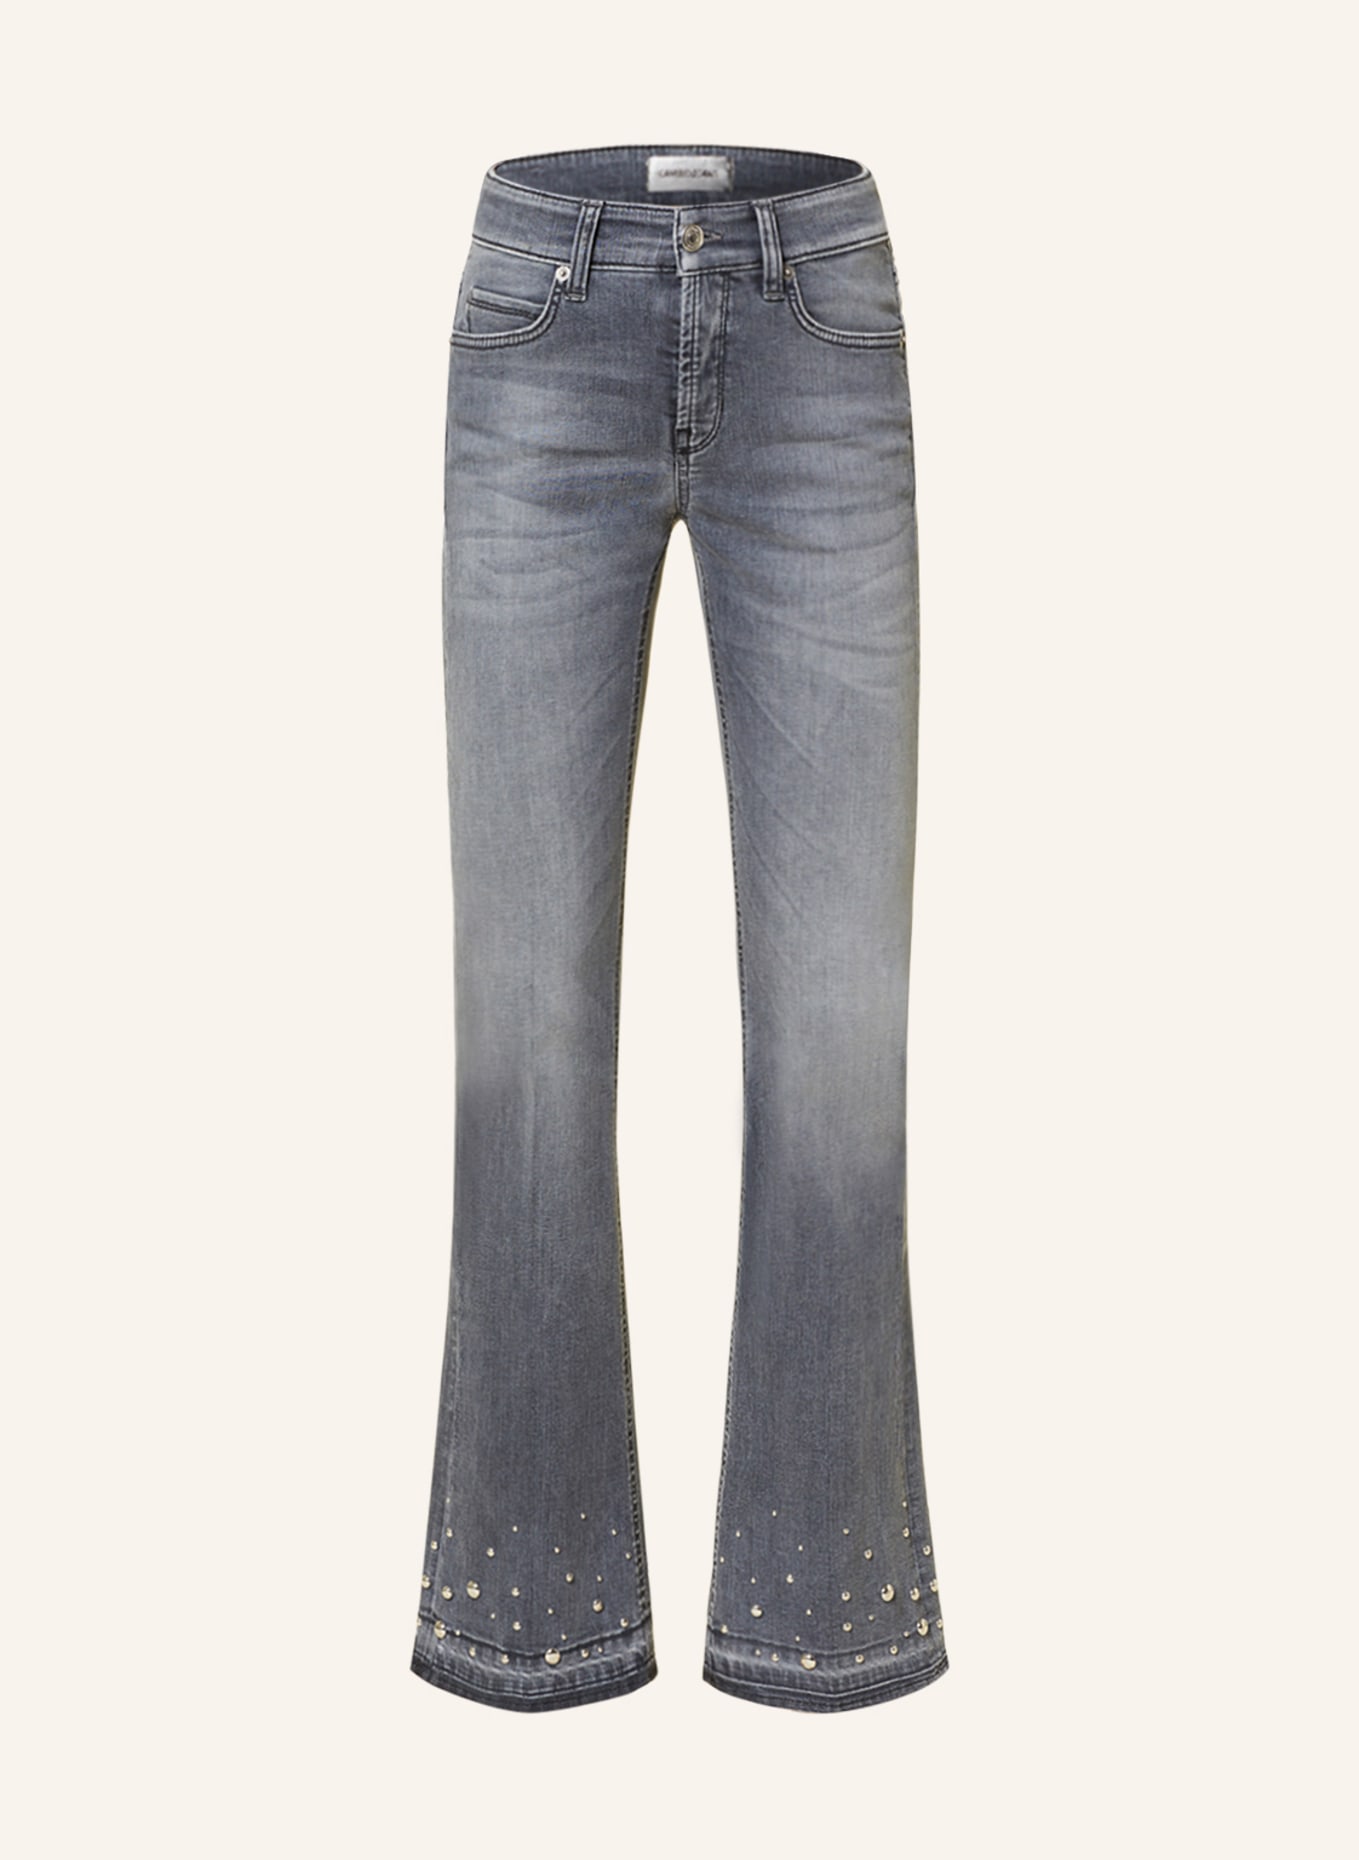 CAMBIO Flared Jeans PARIS mit Nieten, Farbe: 5241 feminin contrast used ope (Bild 1)